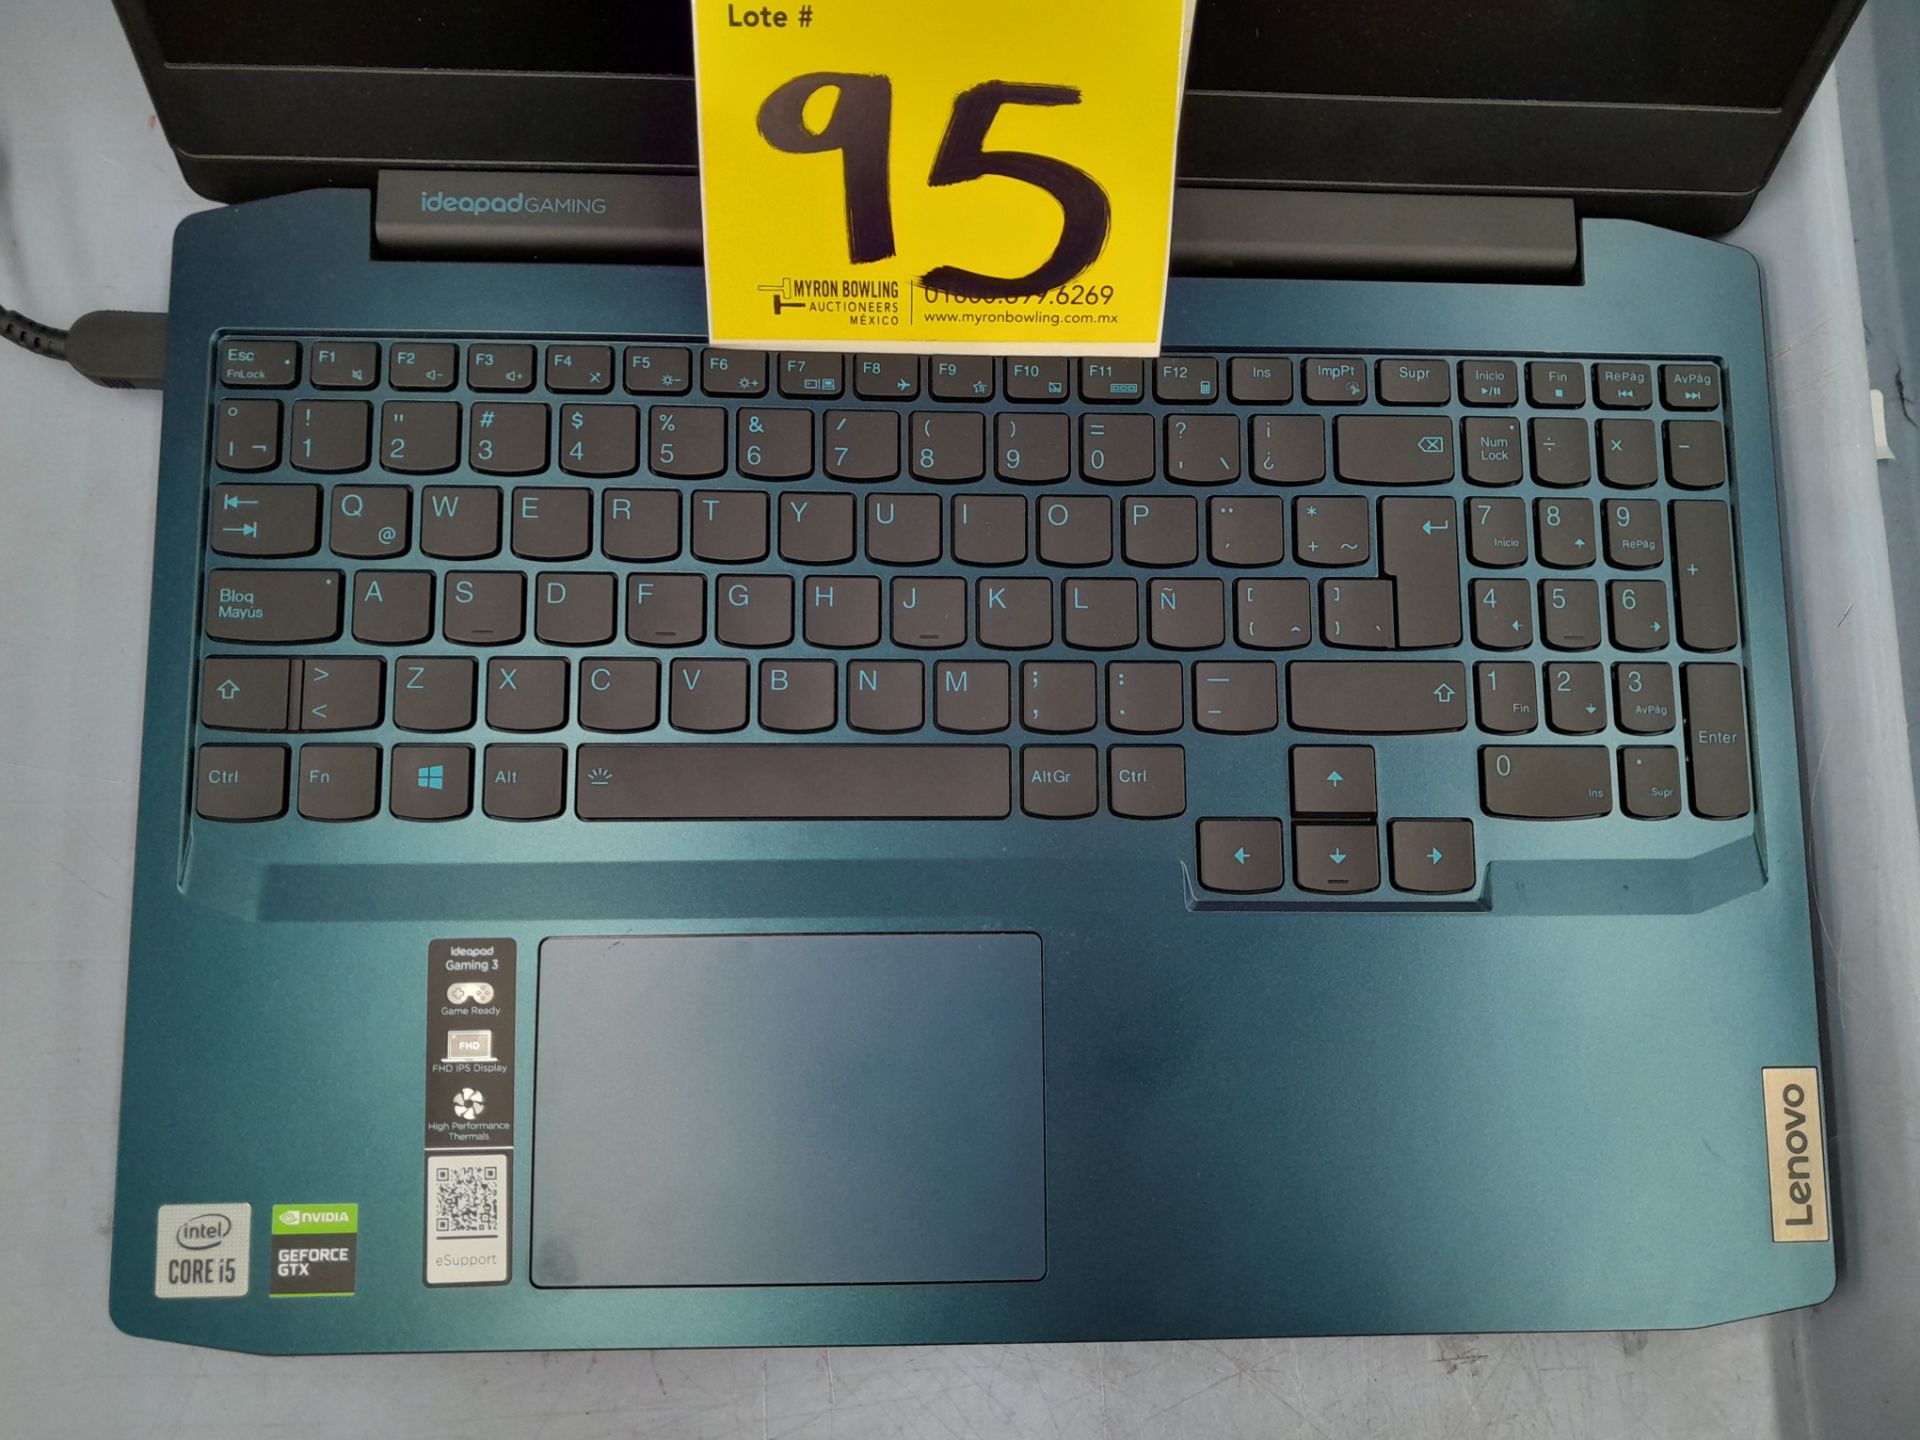 Lote de 2 laptops contiene: 1 Laptop Marca LENOVO, Modelo 81Y4, RAM 8GB, almacenamiento 1 TB, Proce - Image 9 of 13